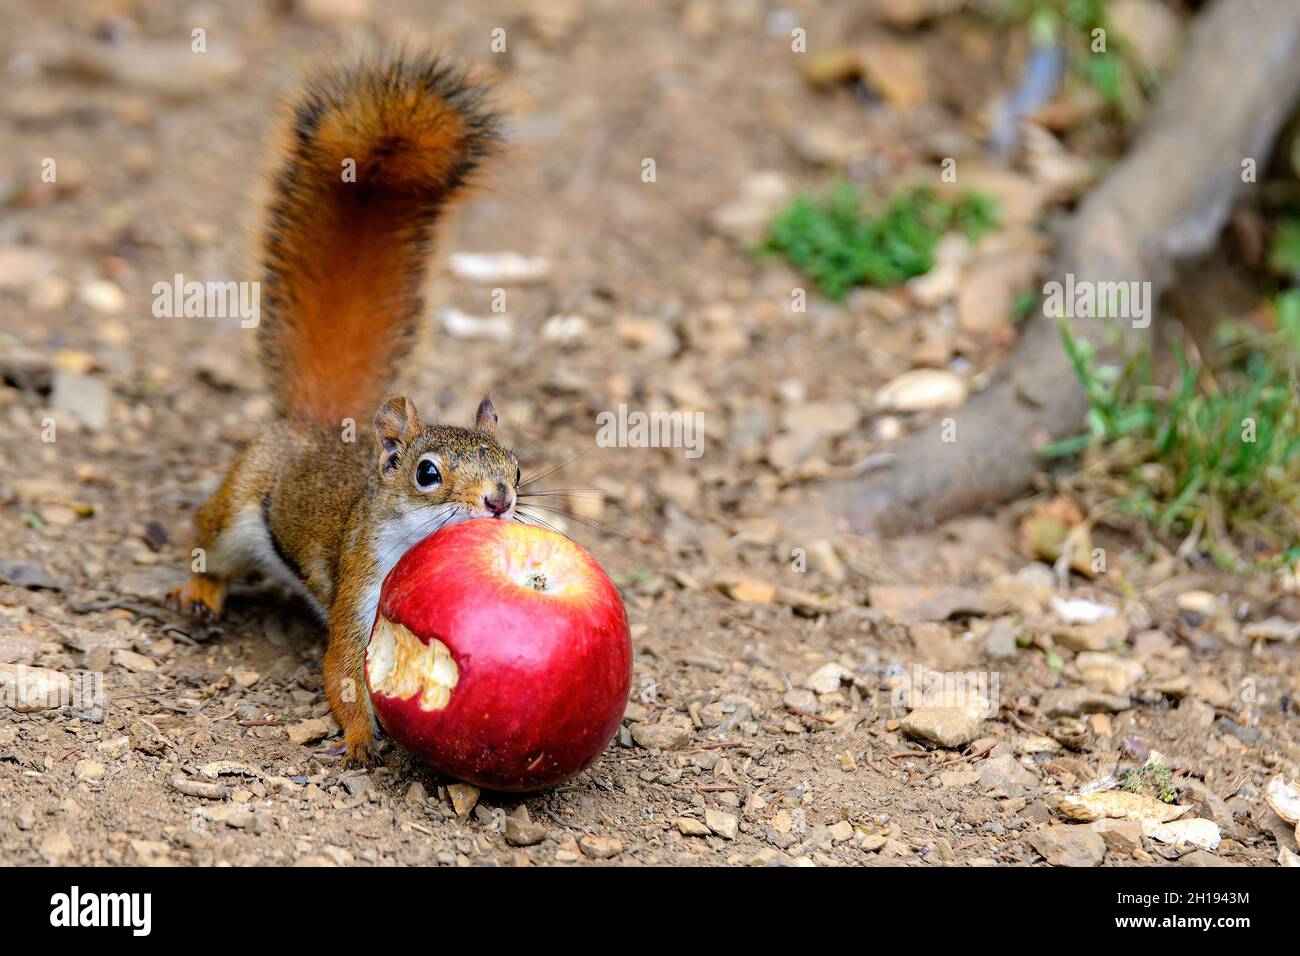 Petit écureuil rouge essayant de saisir une pomme partiellement mangée.La pomme est trop grande pour que l'écureuil puisse le porter, il essaie donc de la tirer vers l'arrière.Concentrez-vous sur vos yeux. Banque D'Images